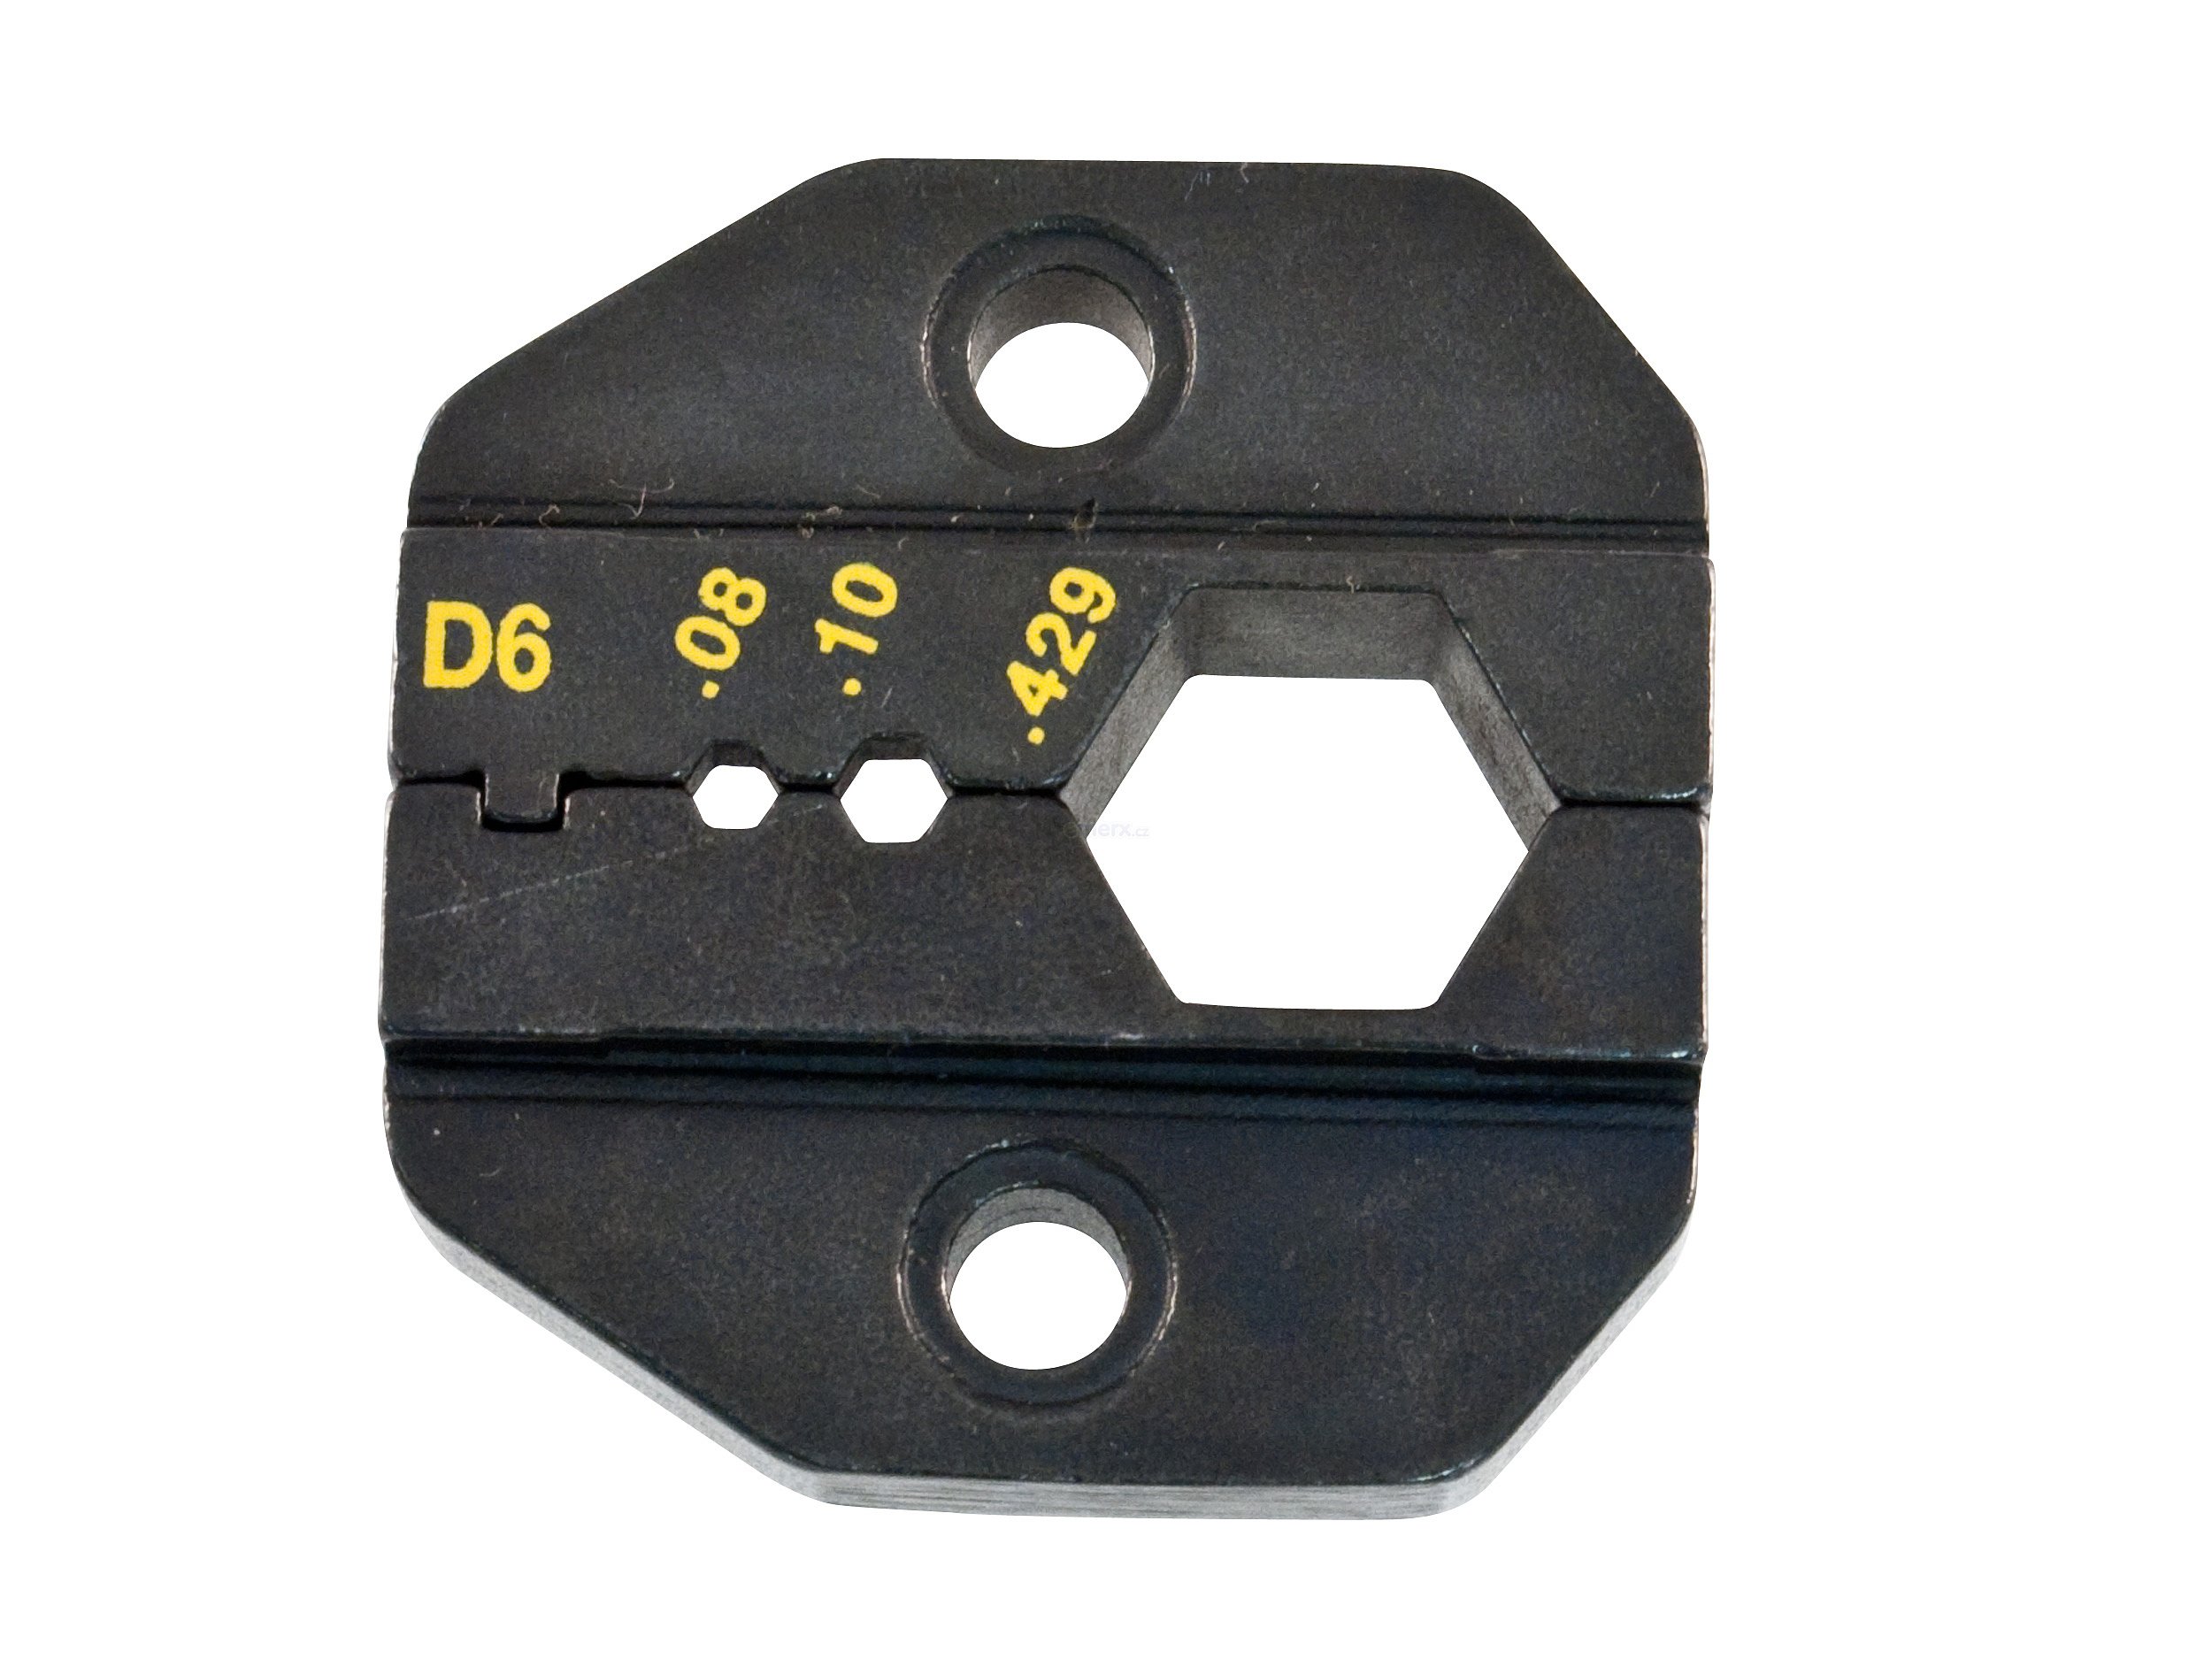 Krimpovací čelisti pro N konektory PROSKIT 1PK-3003D6 (1PK-3003D6)